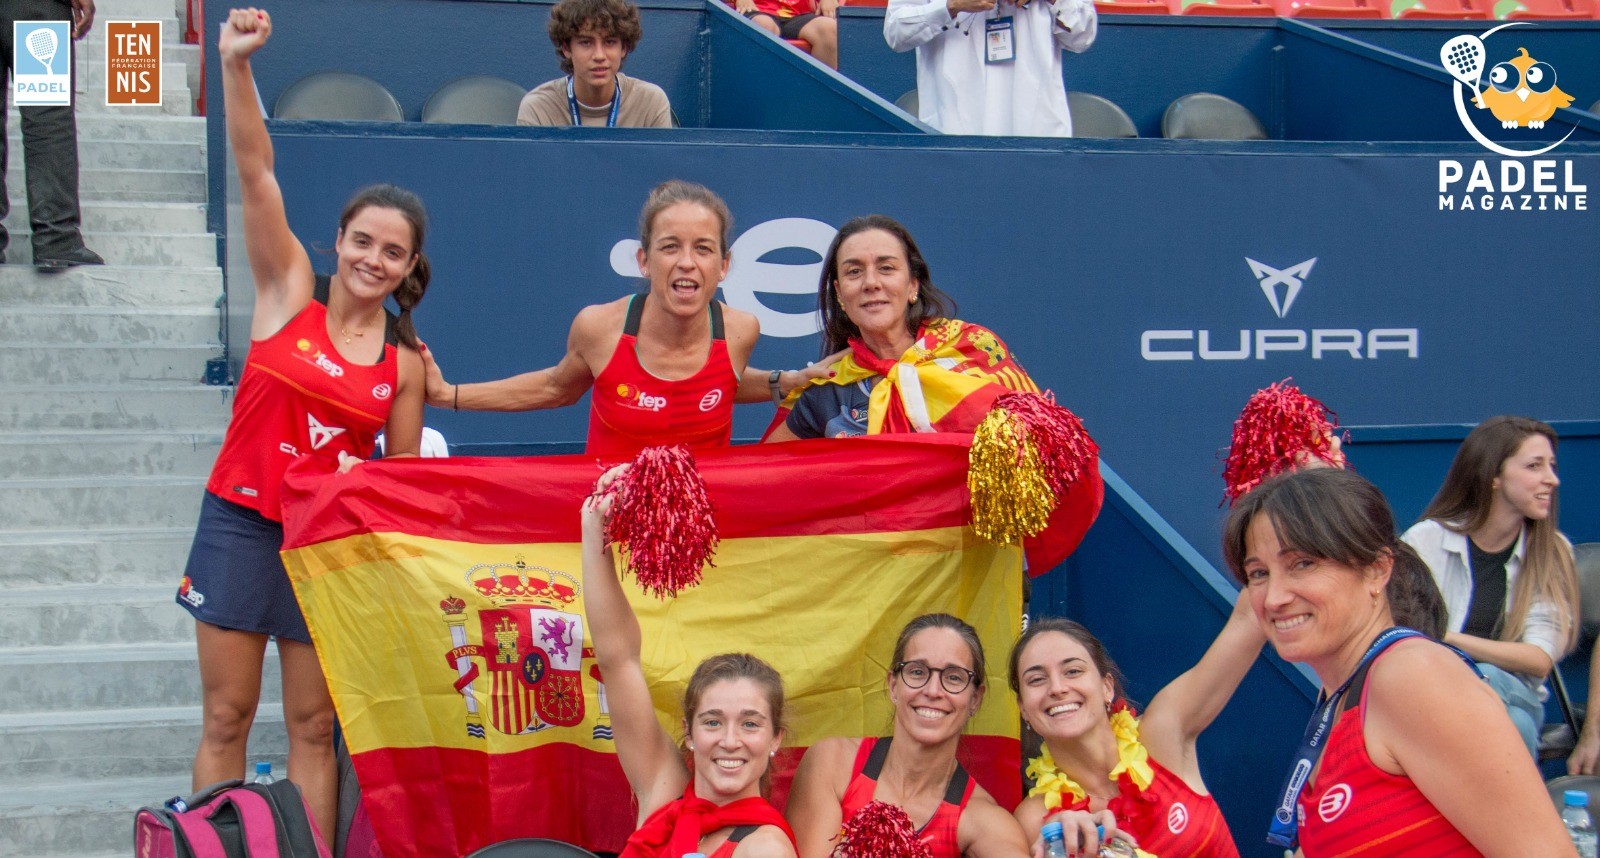 Le padel “Coma” tênis na Espanha